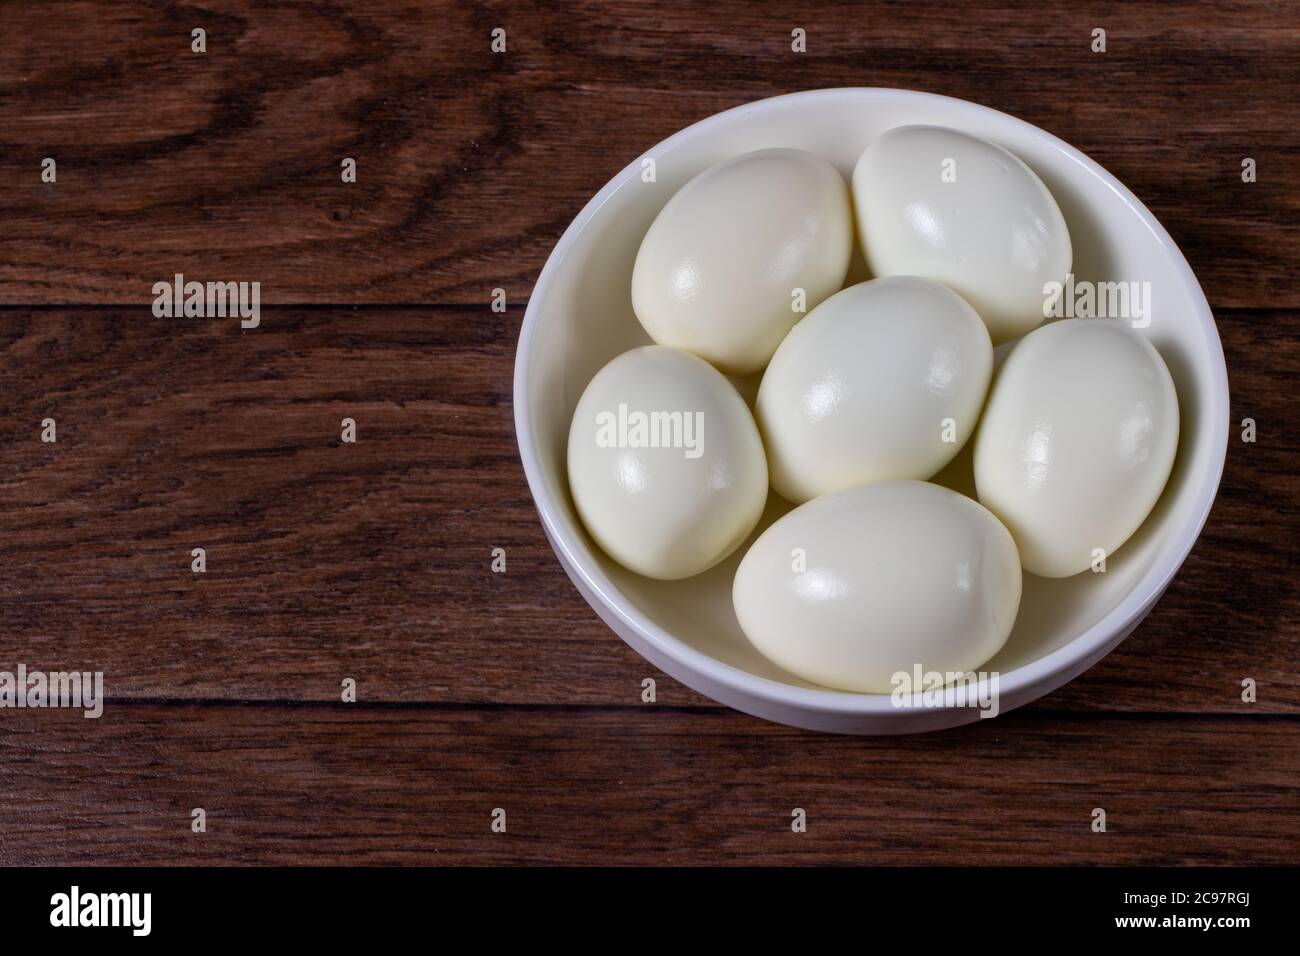 Gekochte geschälte Eier ohne Schale auf einem Hintergrund. Zutaten zum  Kochen Stockfotografie - Alamy